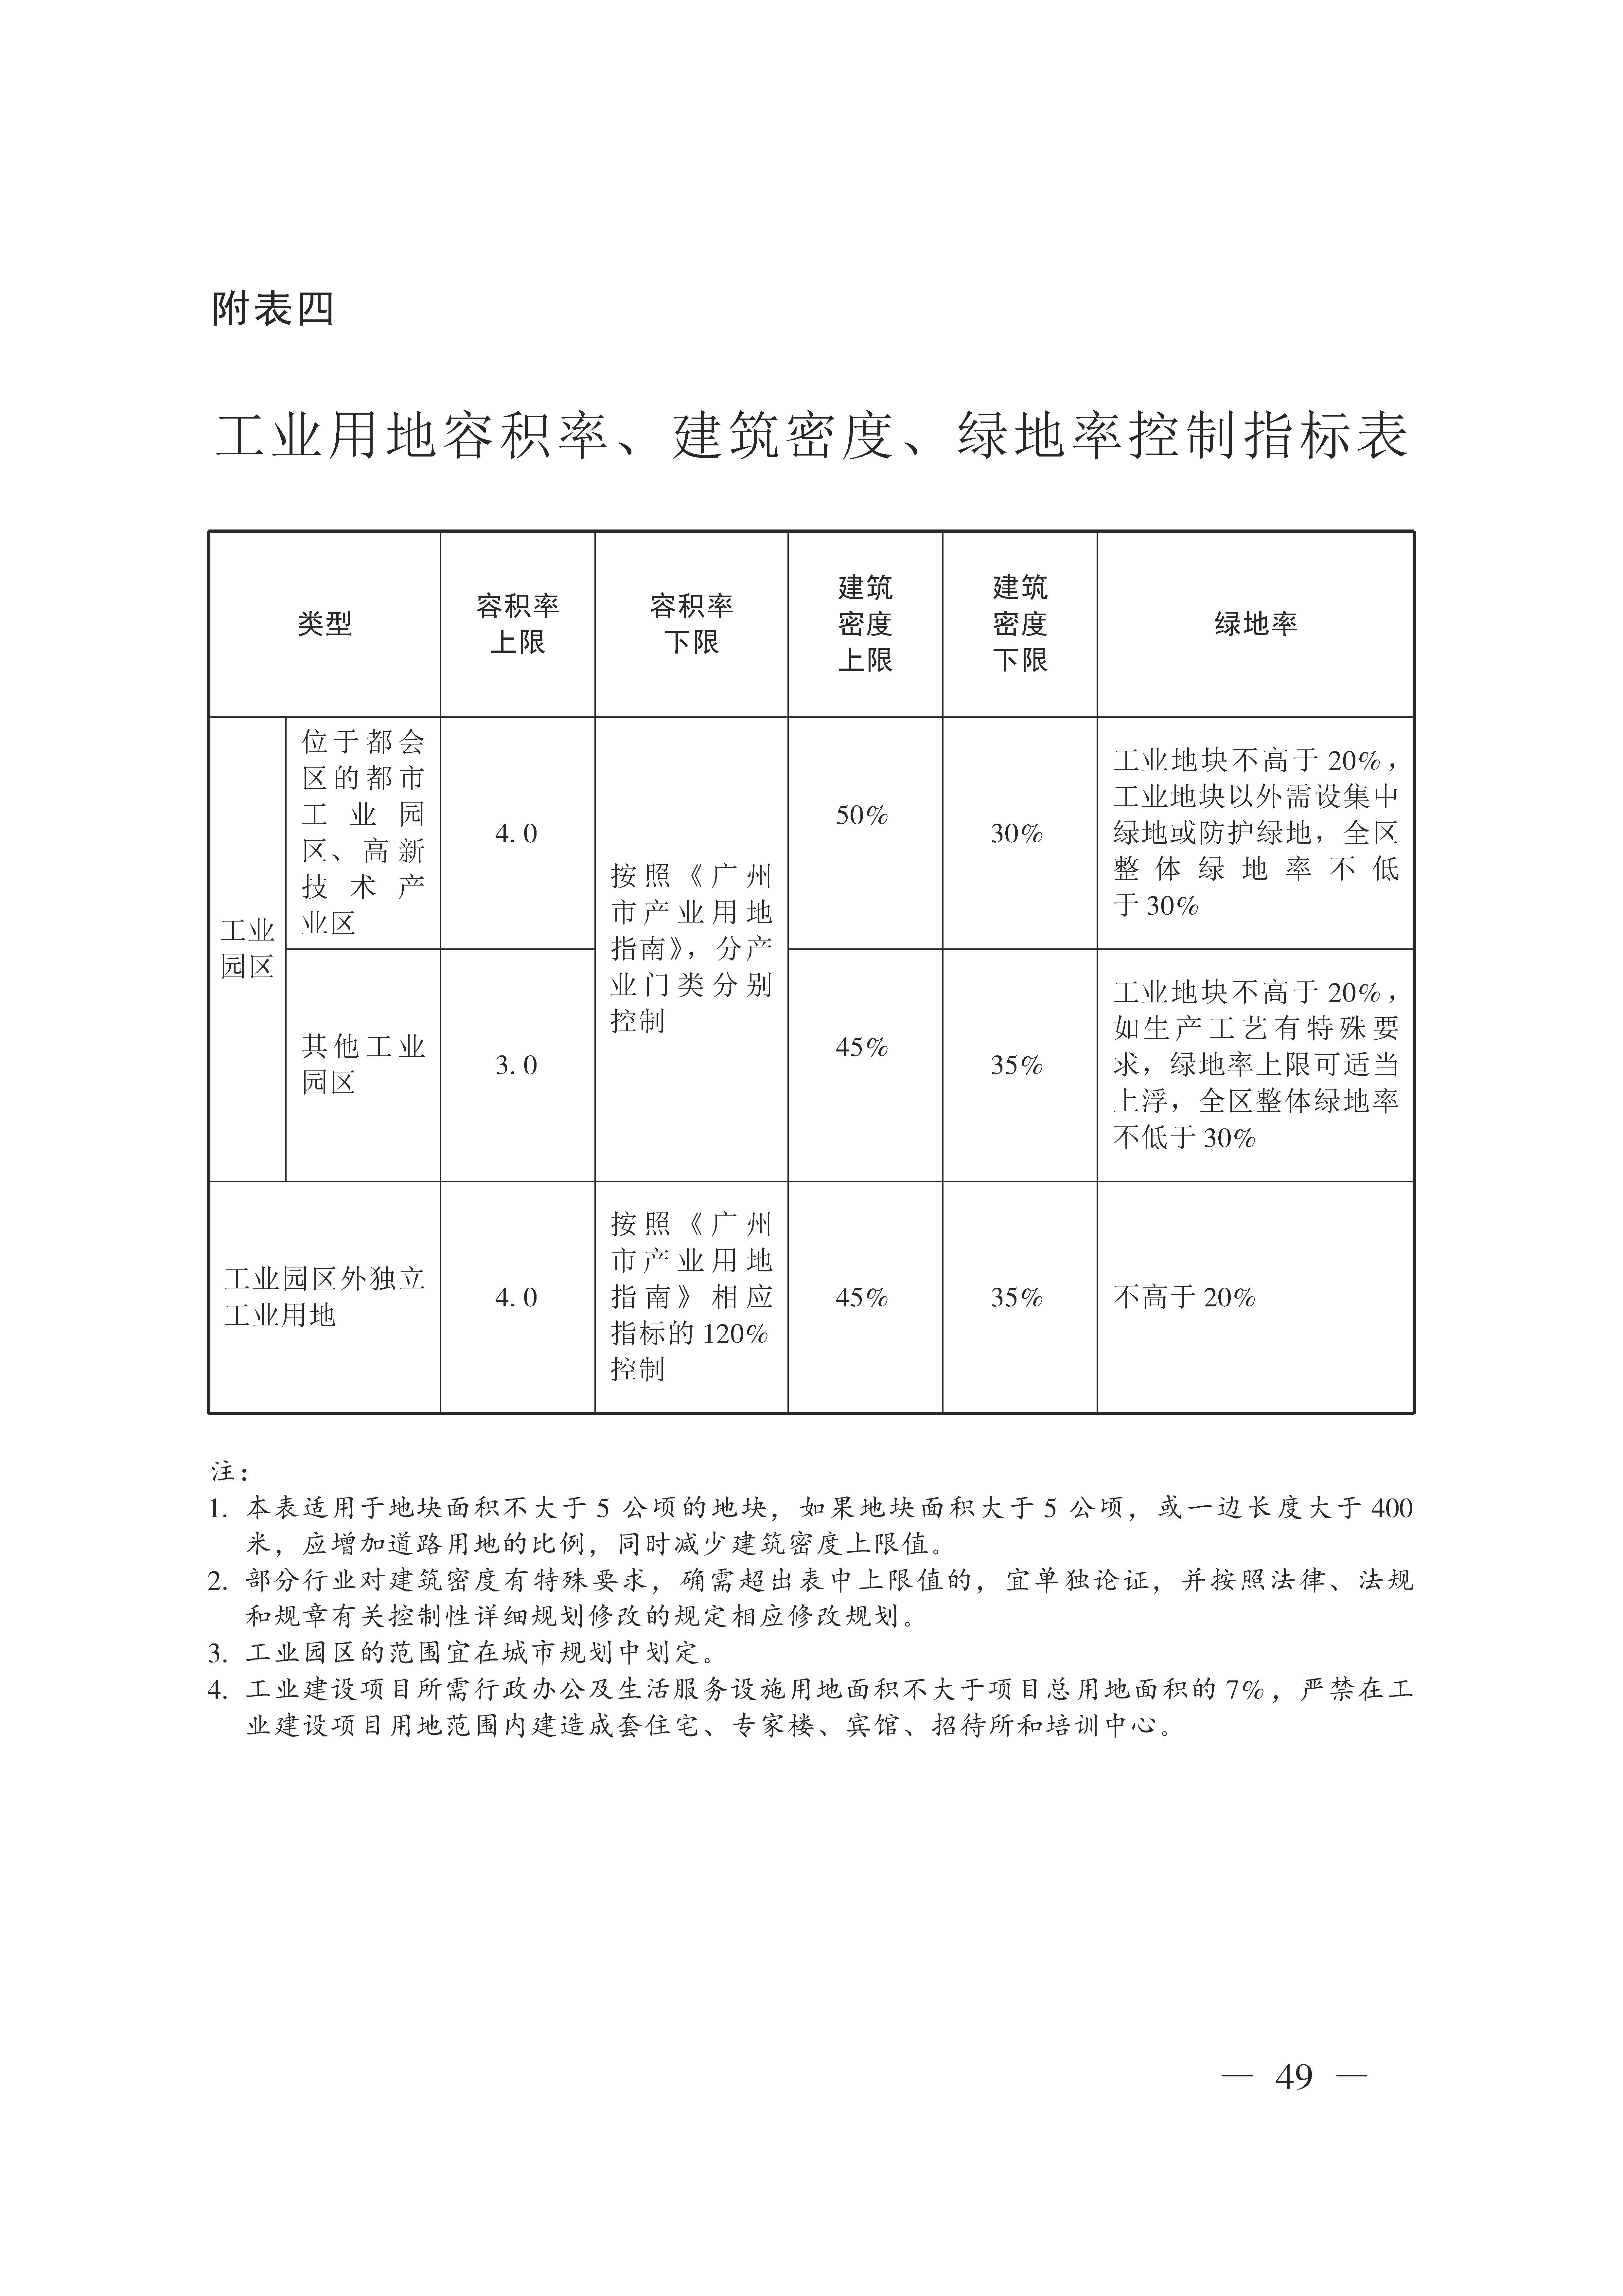 广州市城乡规划技术规定（政府令133号）_页面_49.jpg